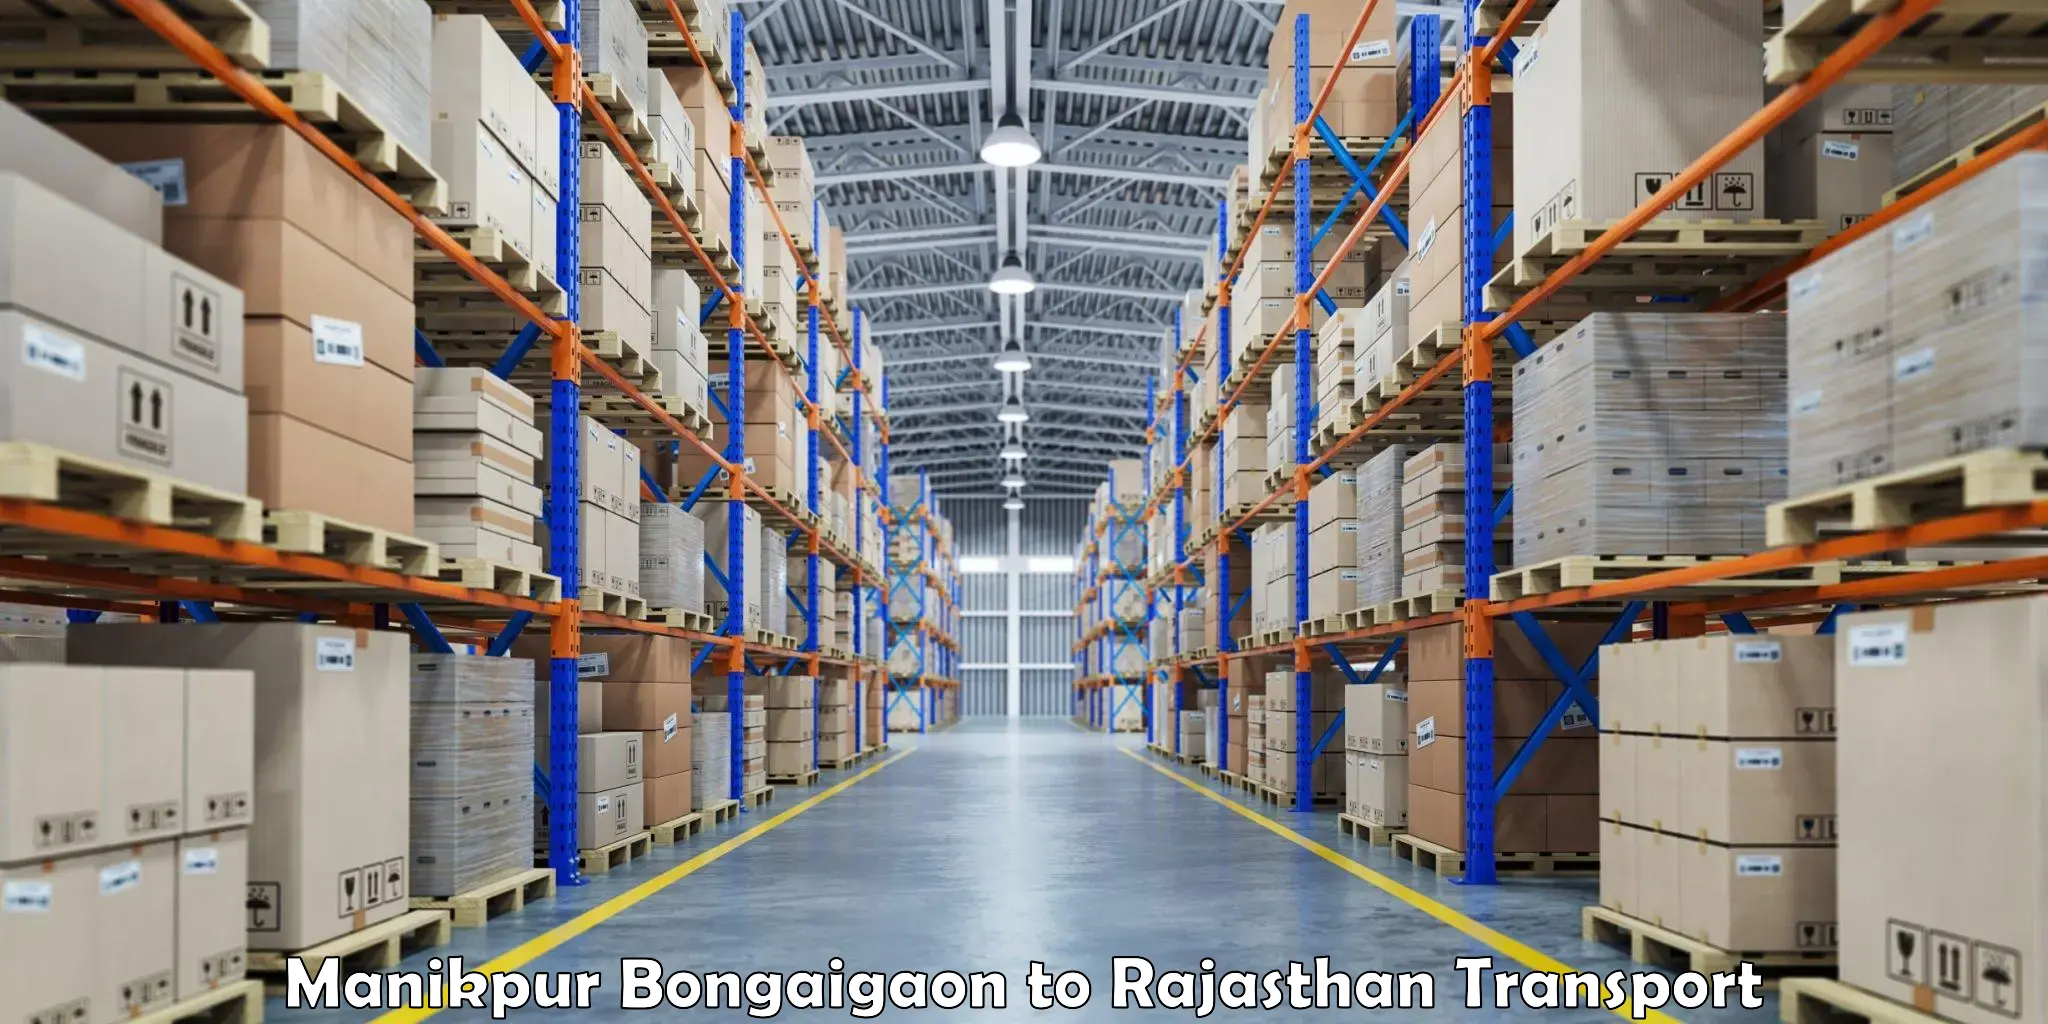 Lorry transport service Manikpur Bongaigaon to Rajasthan